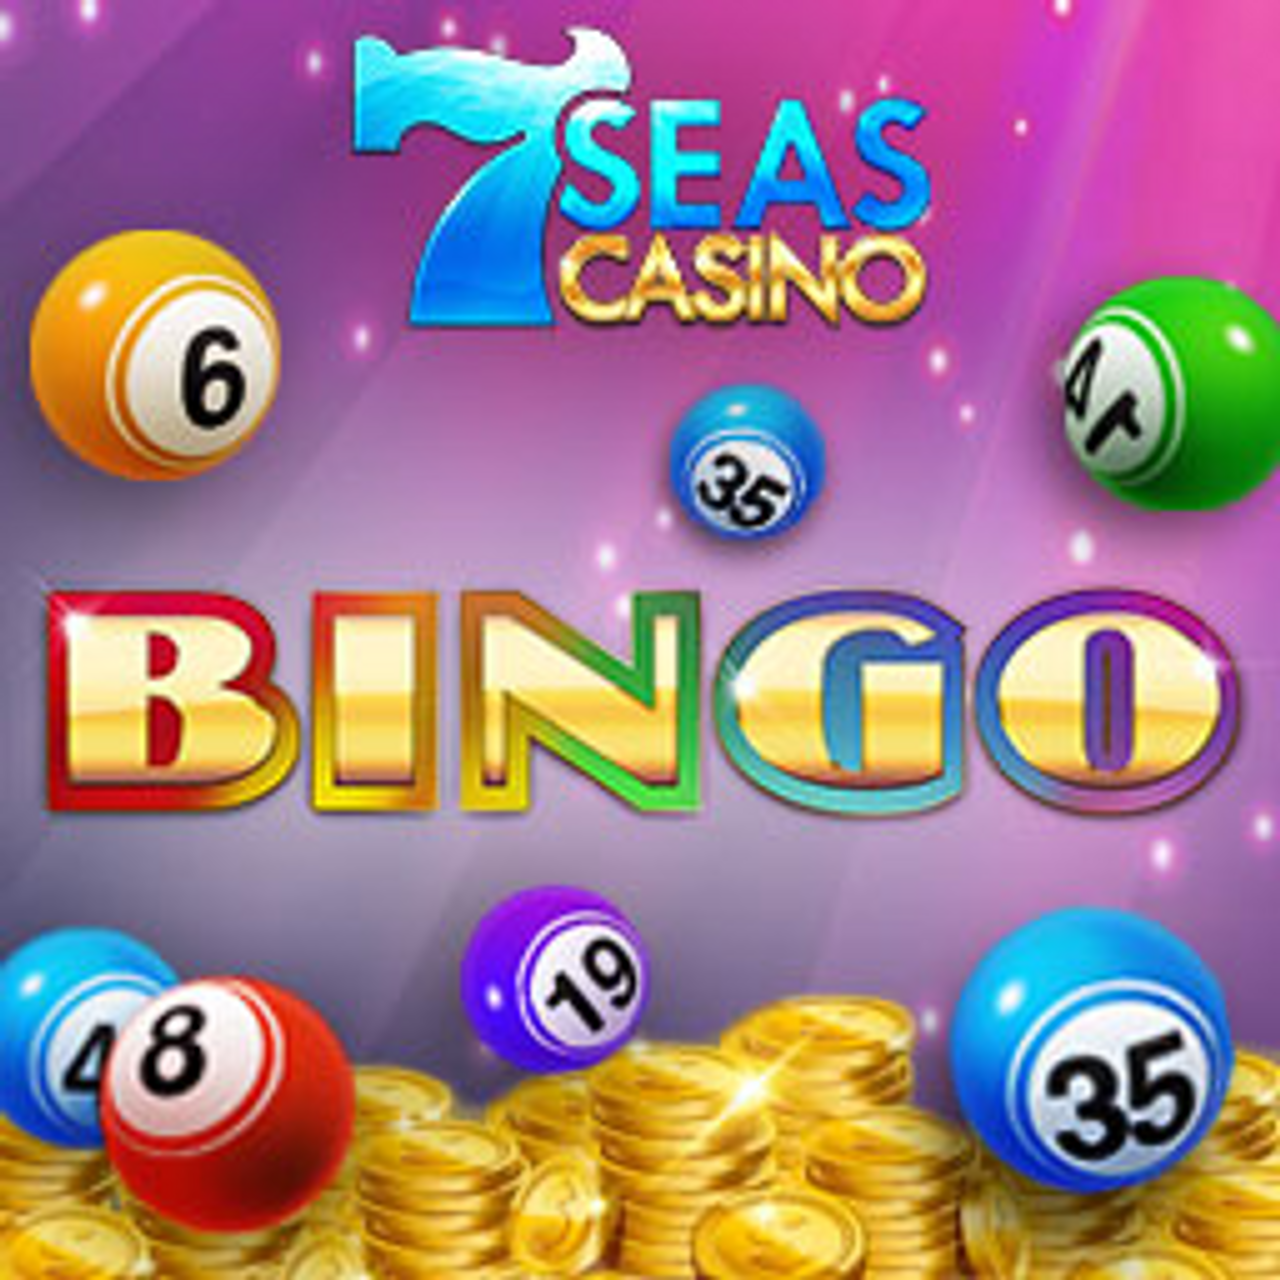 7 Seas Casino Bingo